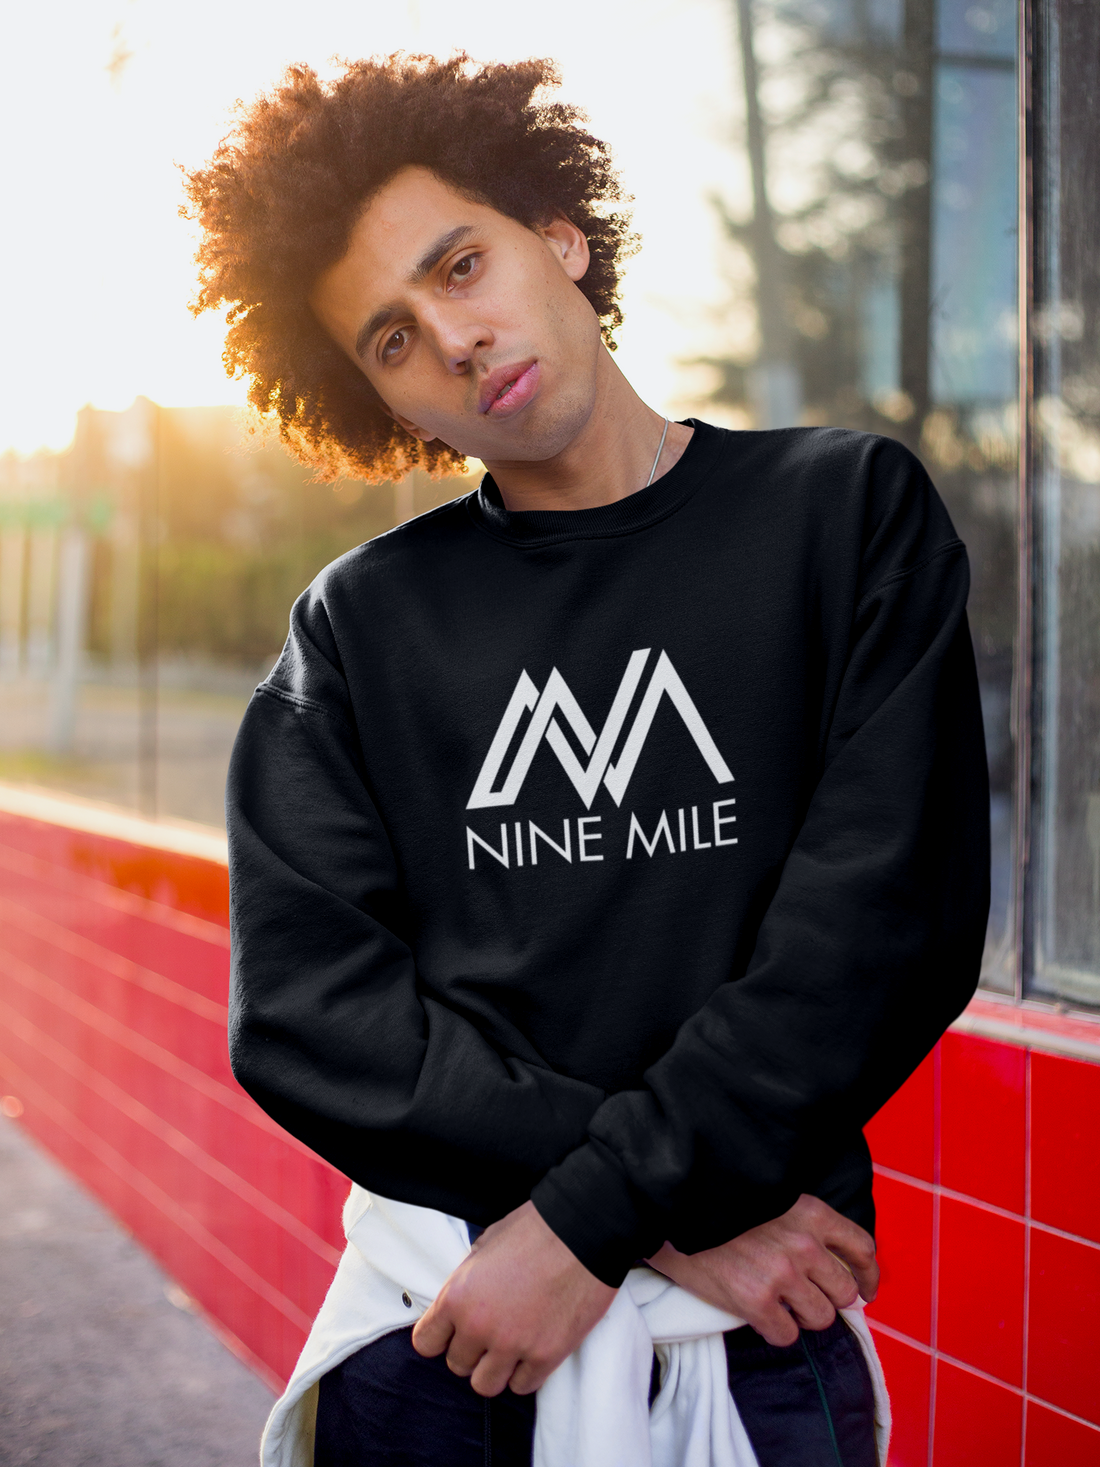 Nine Mile Vibes Sweatshirt - Nine Mile Clothing 